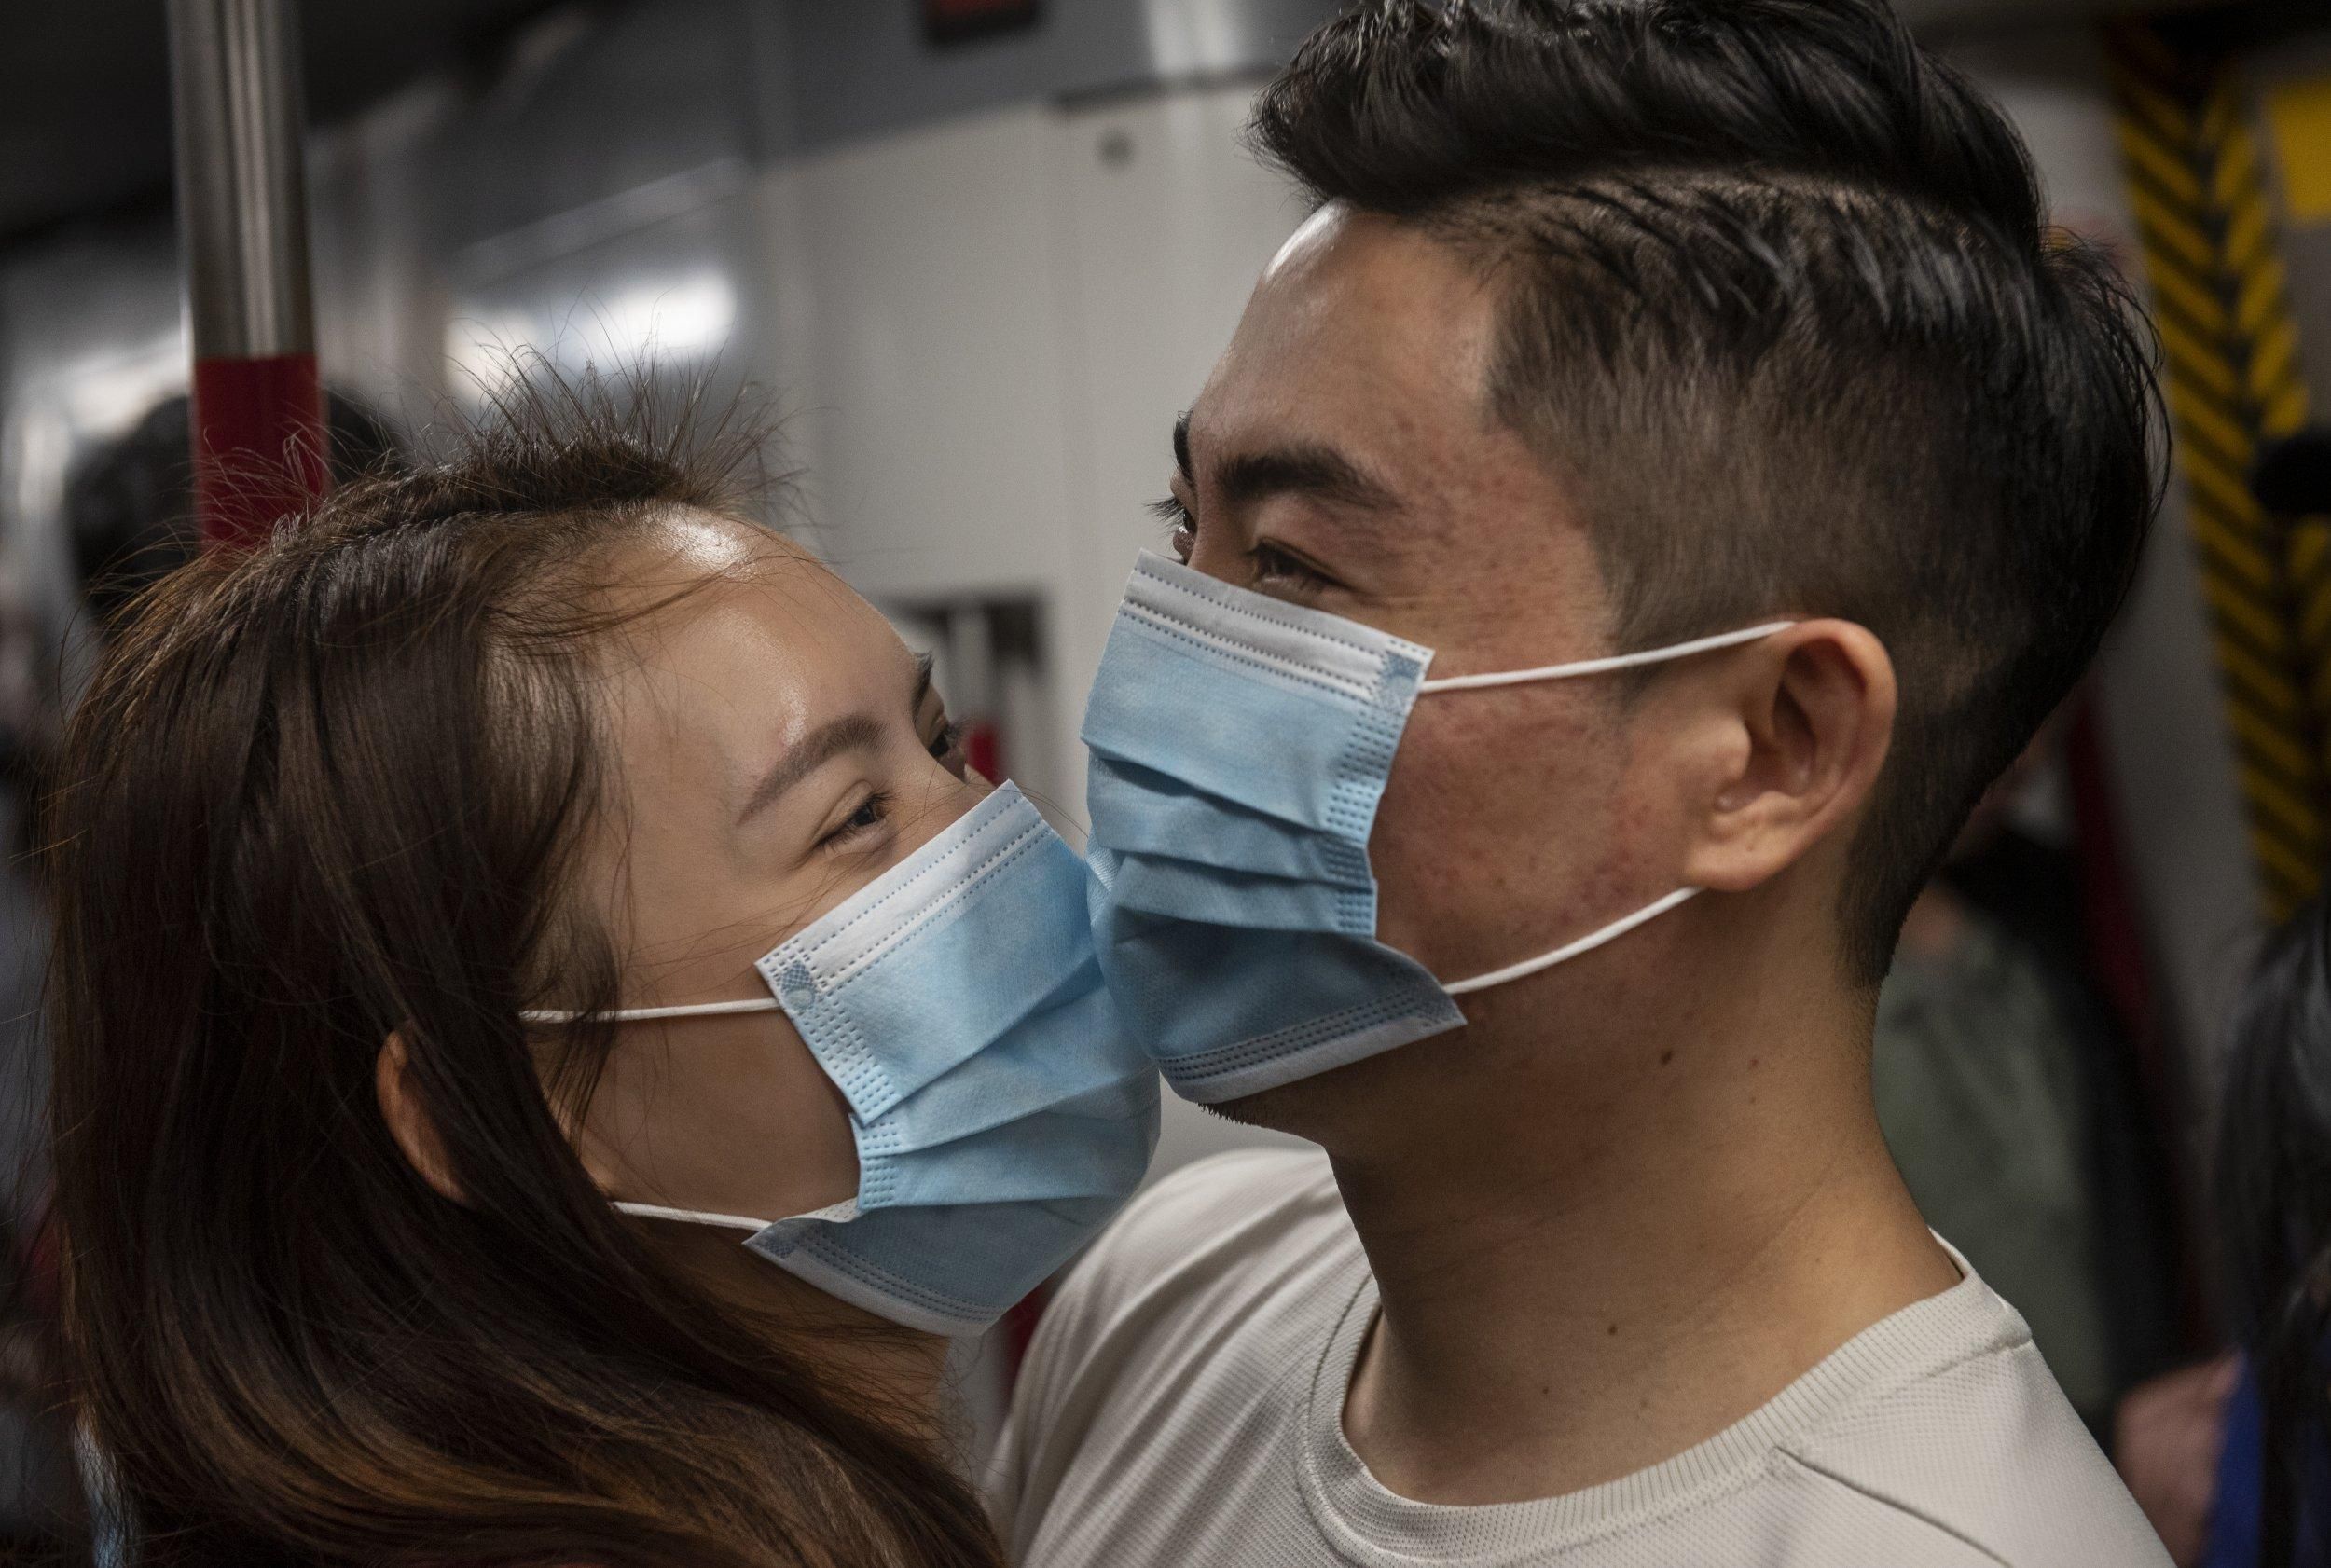 Спасет ли маска. Человек в маски аптечной. Маска медицинская против коронавируса. Люди в защитной маске от вирусов. Маска вирус.